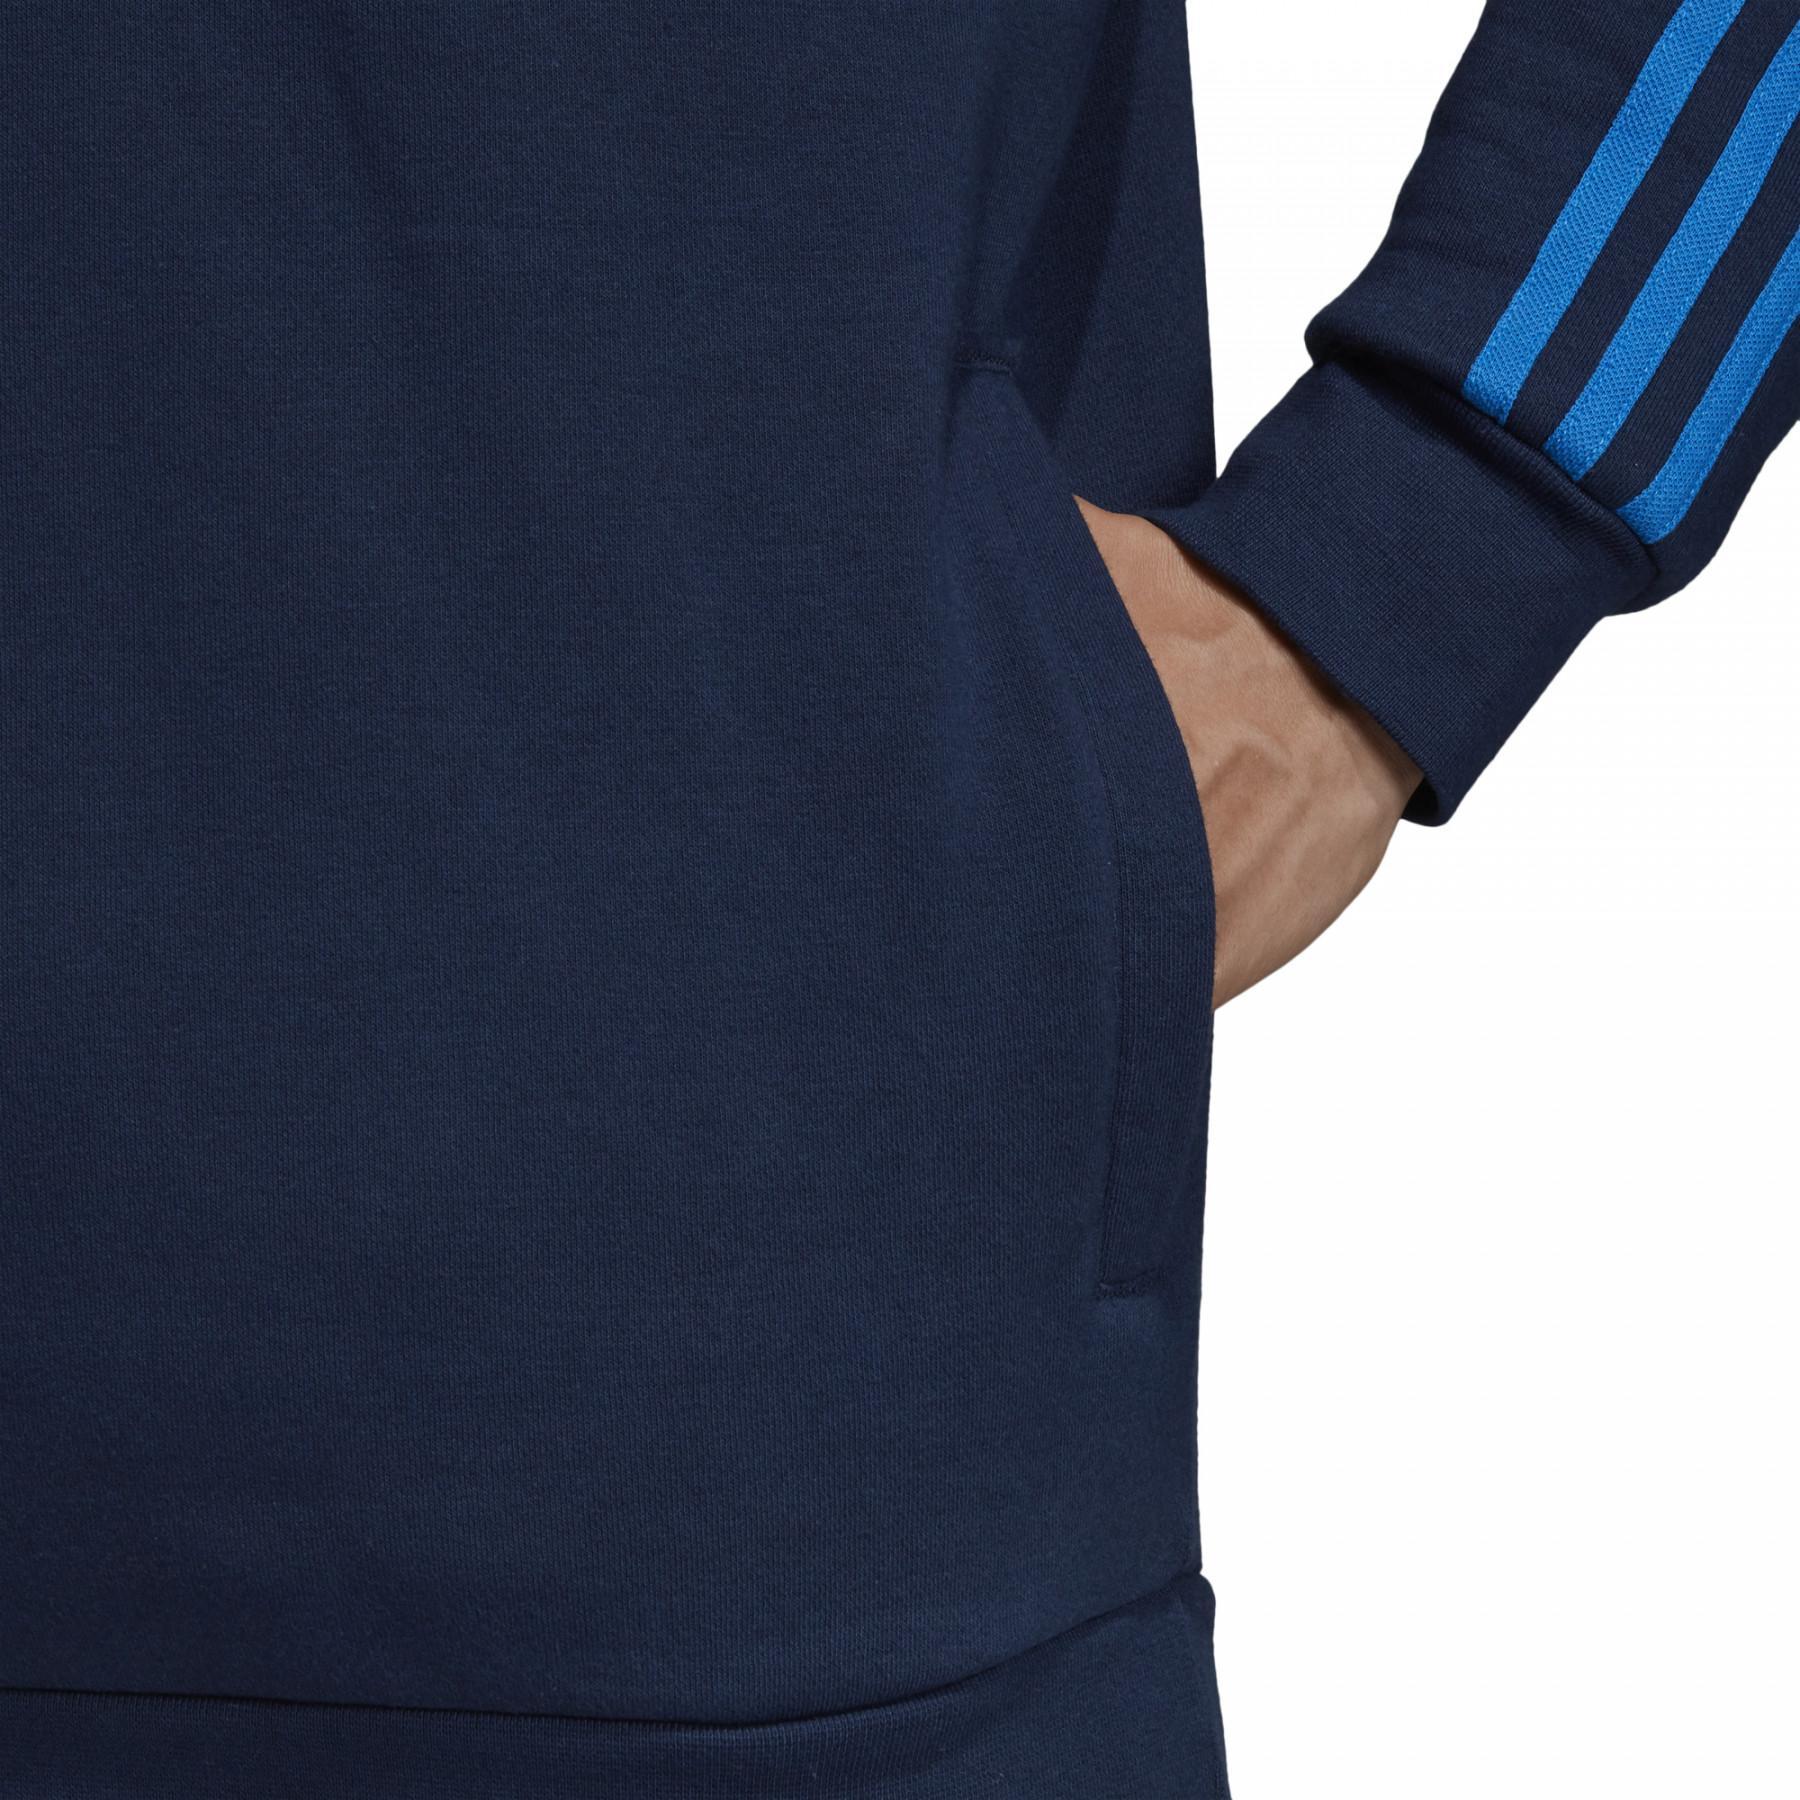 Bluza z kapturem adidas Hz 3 stripe